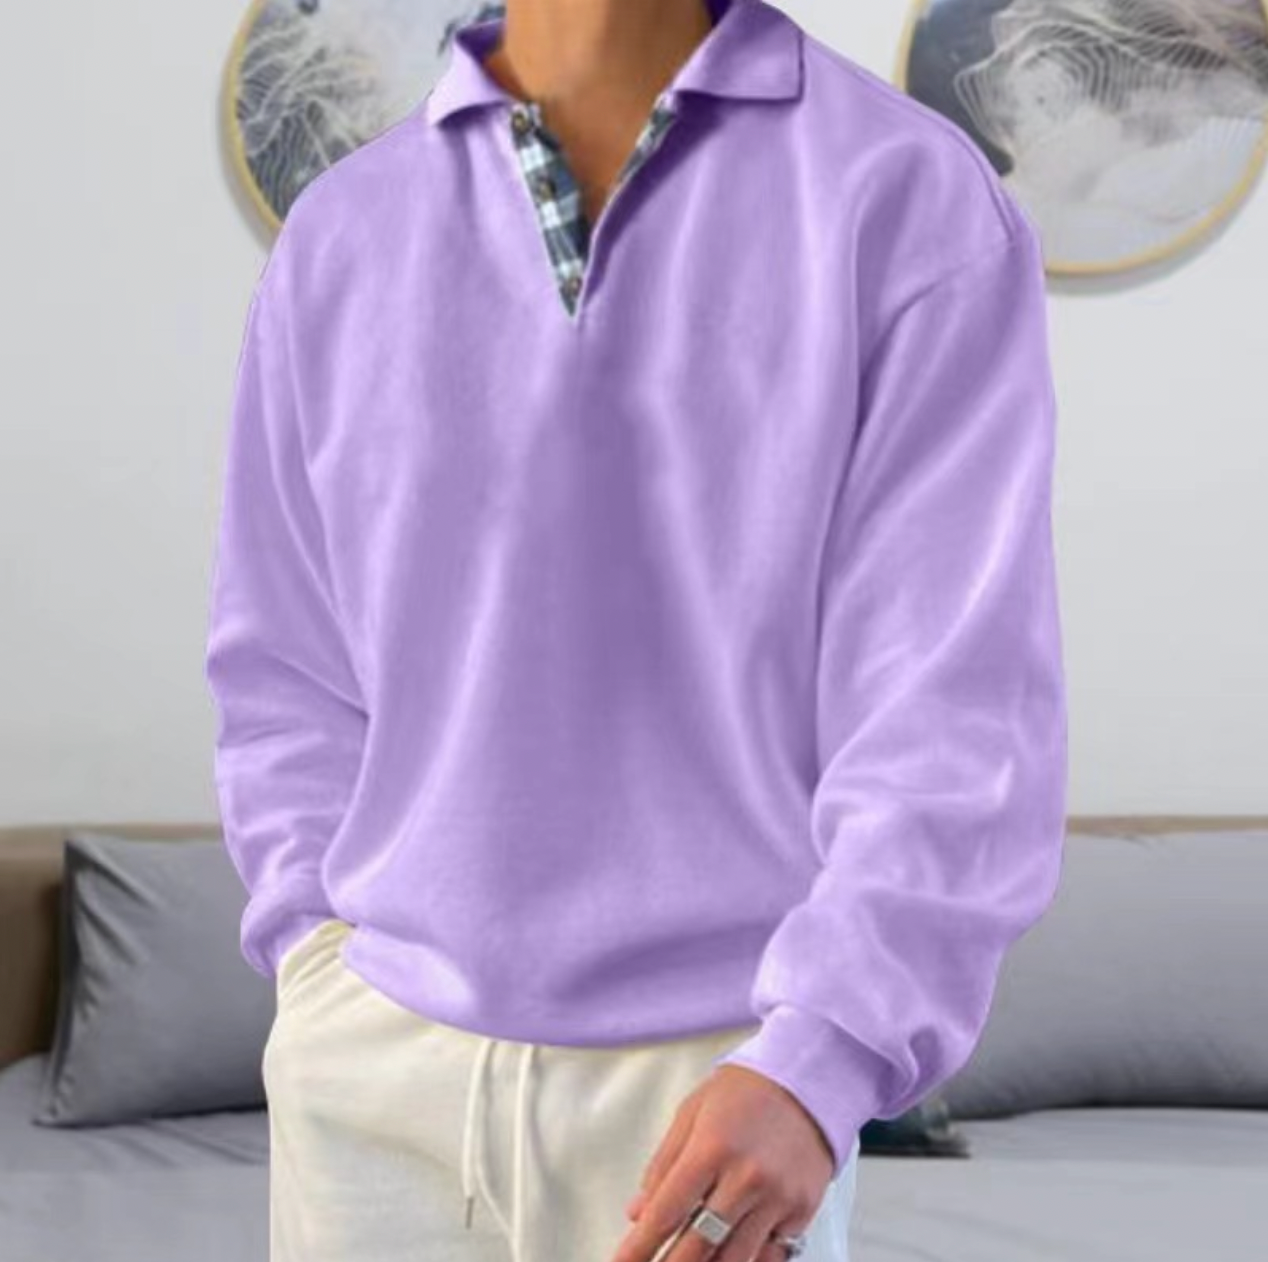 FABU - Der einzigartige und kuschelig warme Pullover